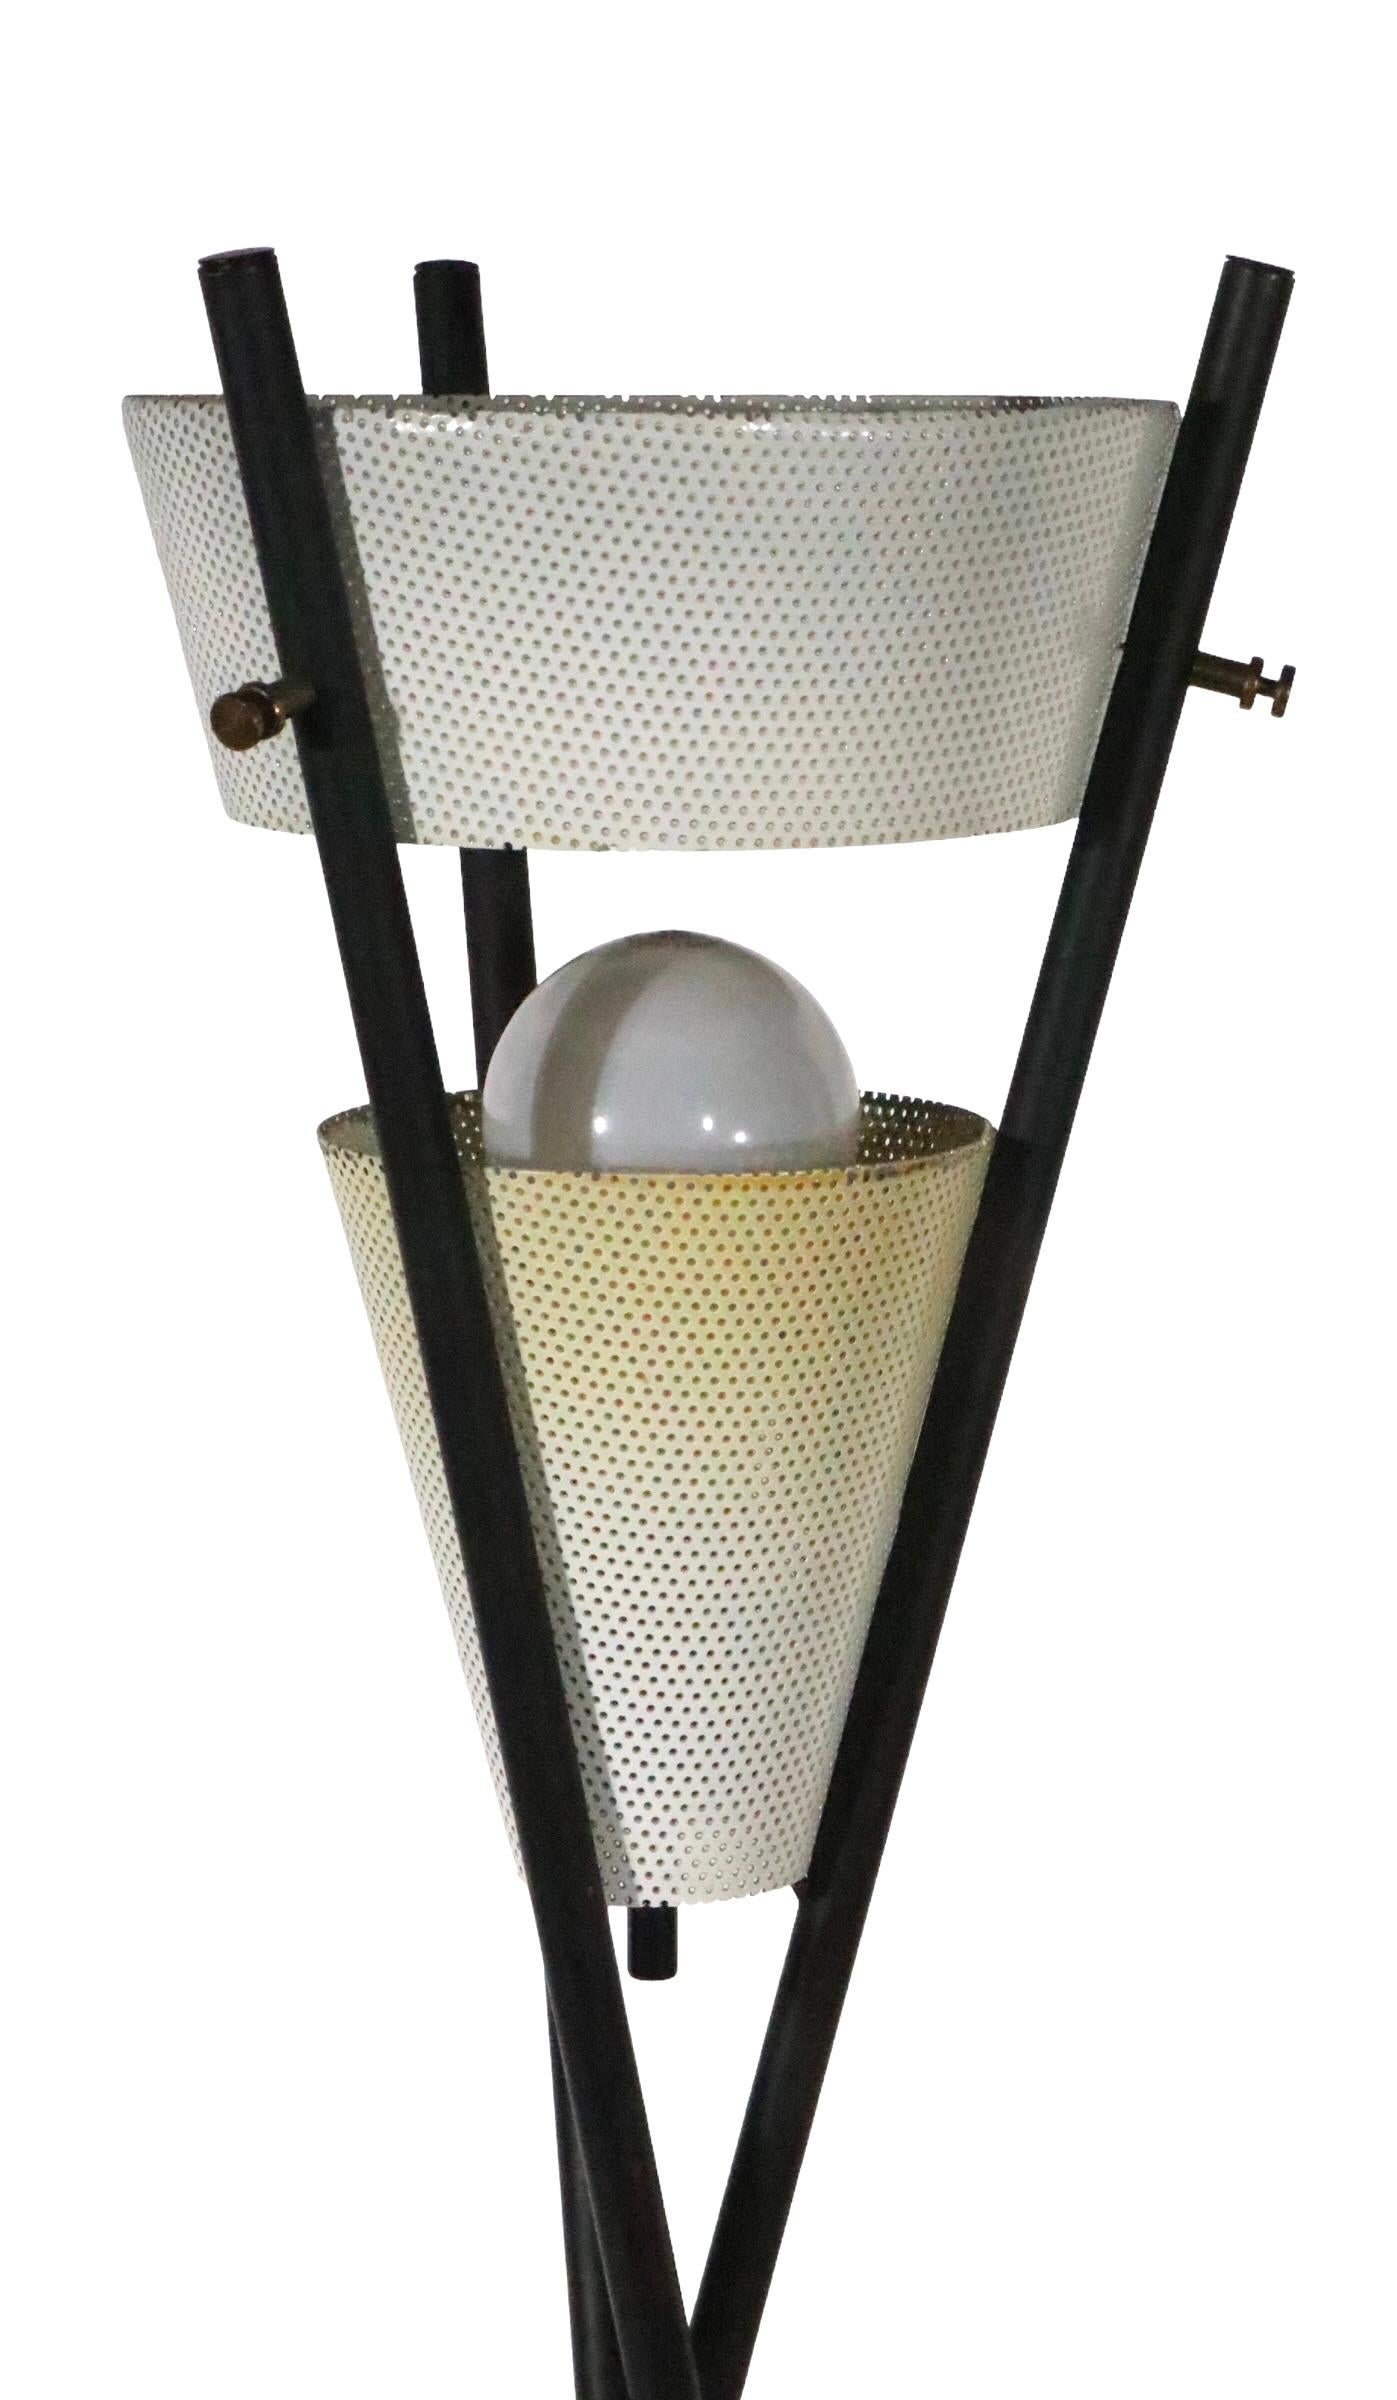 gerald thurston table lamp